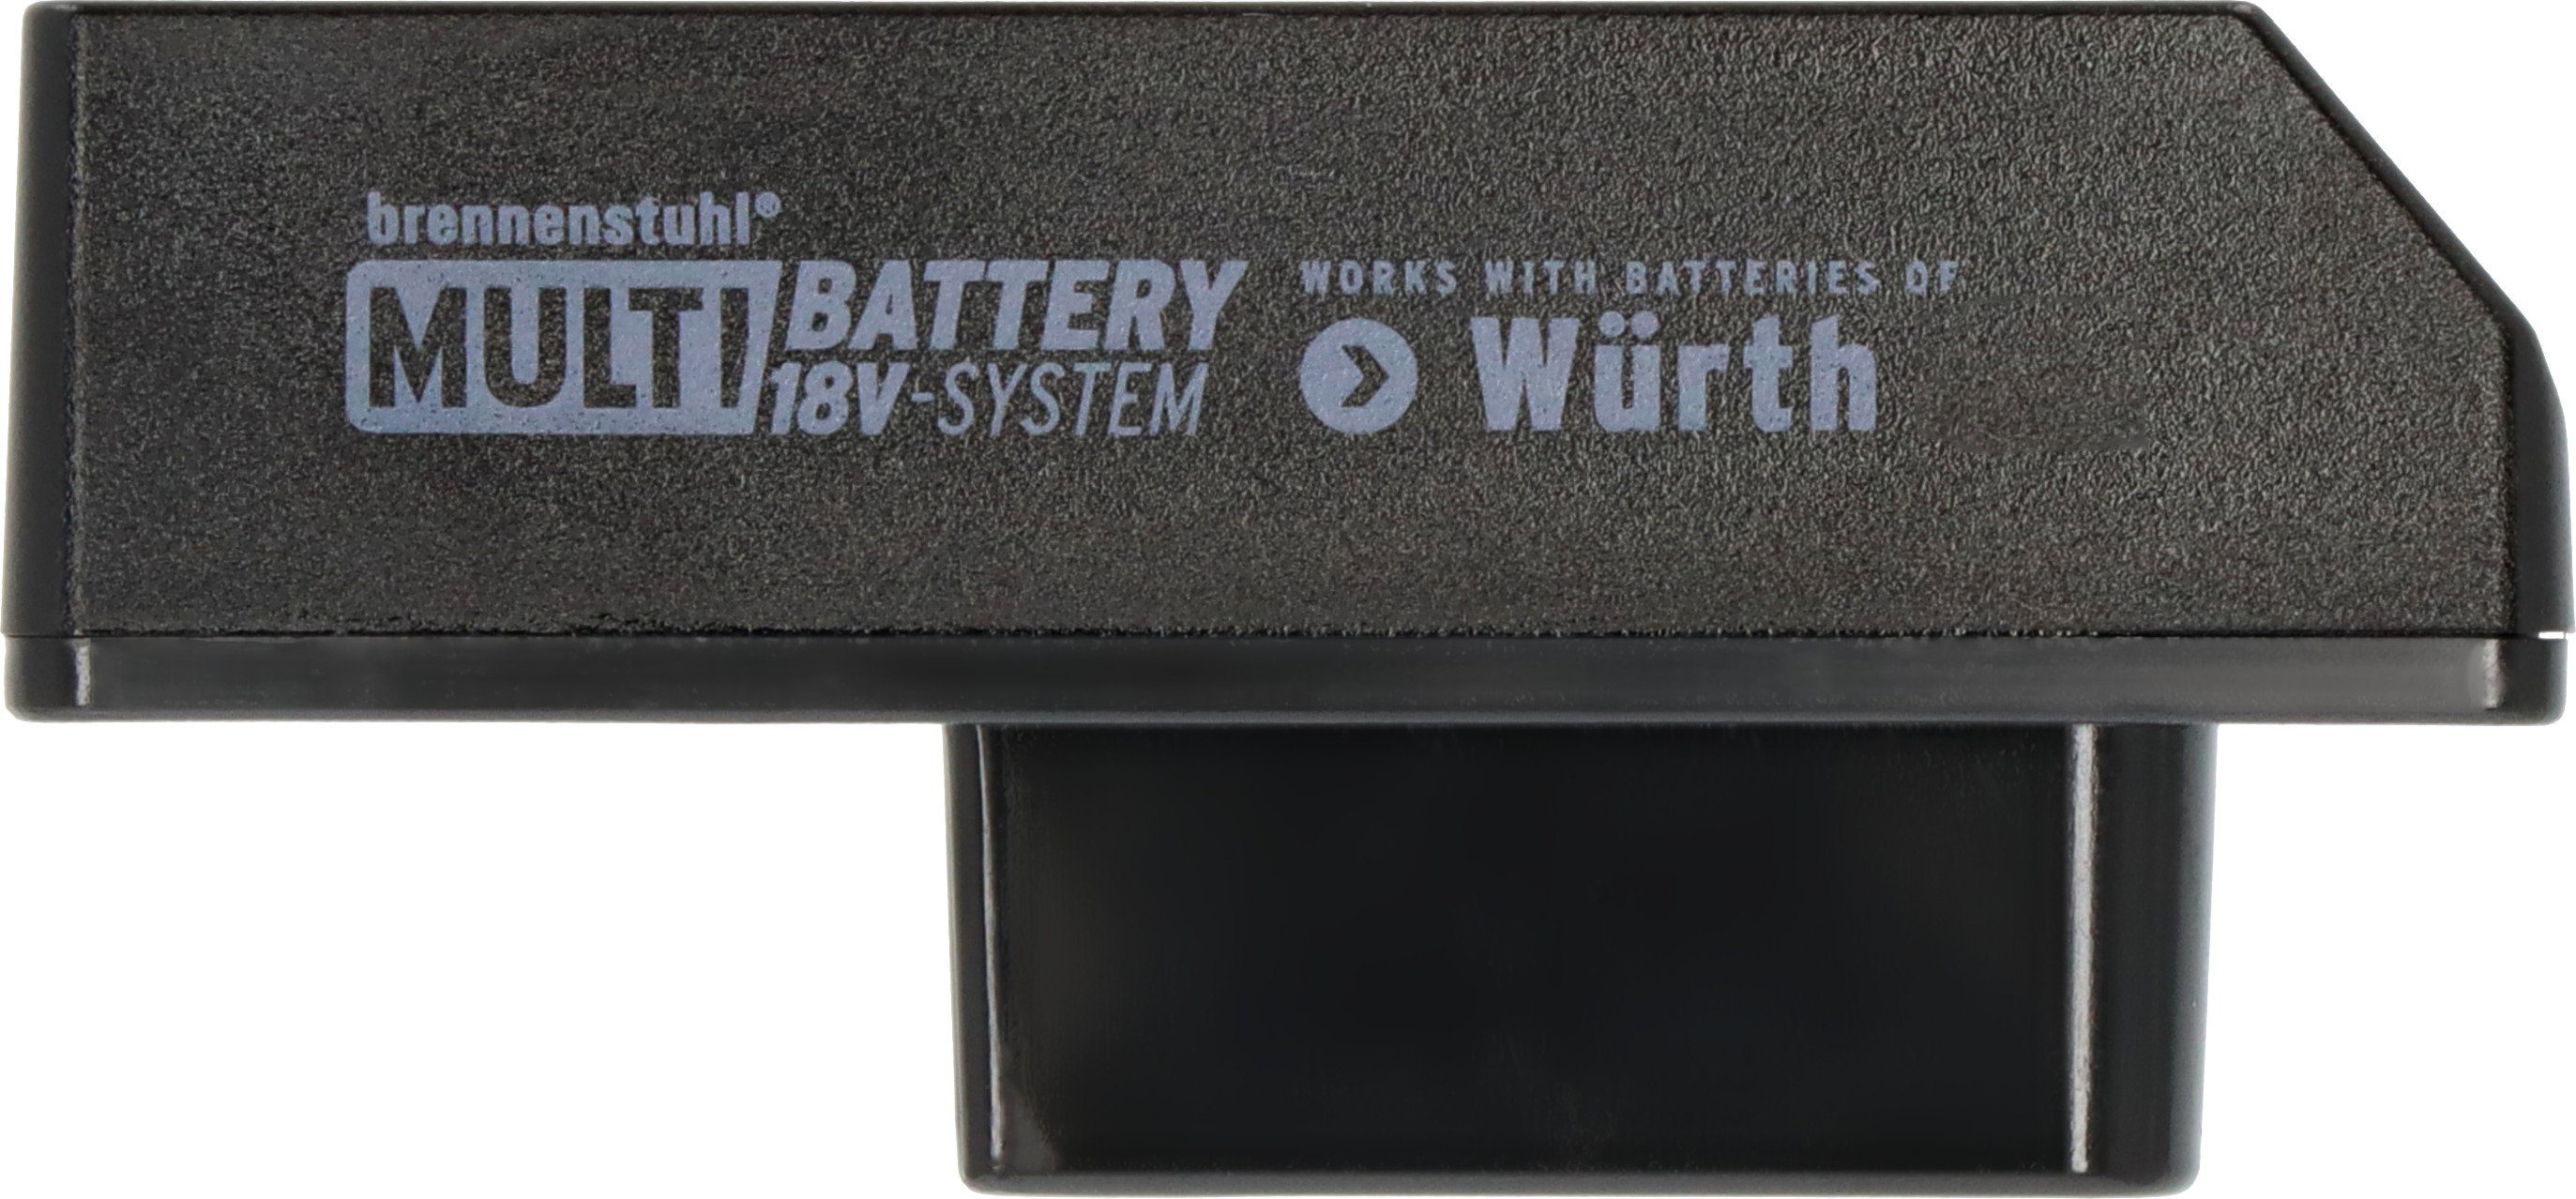 für Battery Brennenstuhl Würth 18V Multi System Adapter, im Baustrahler